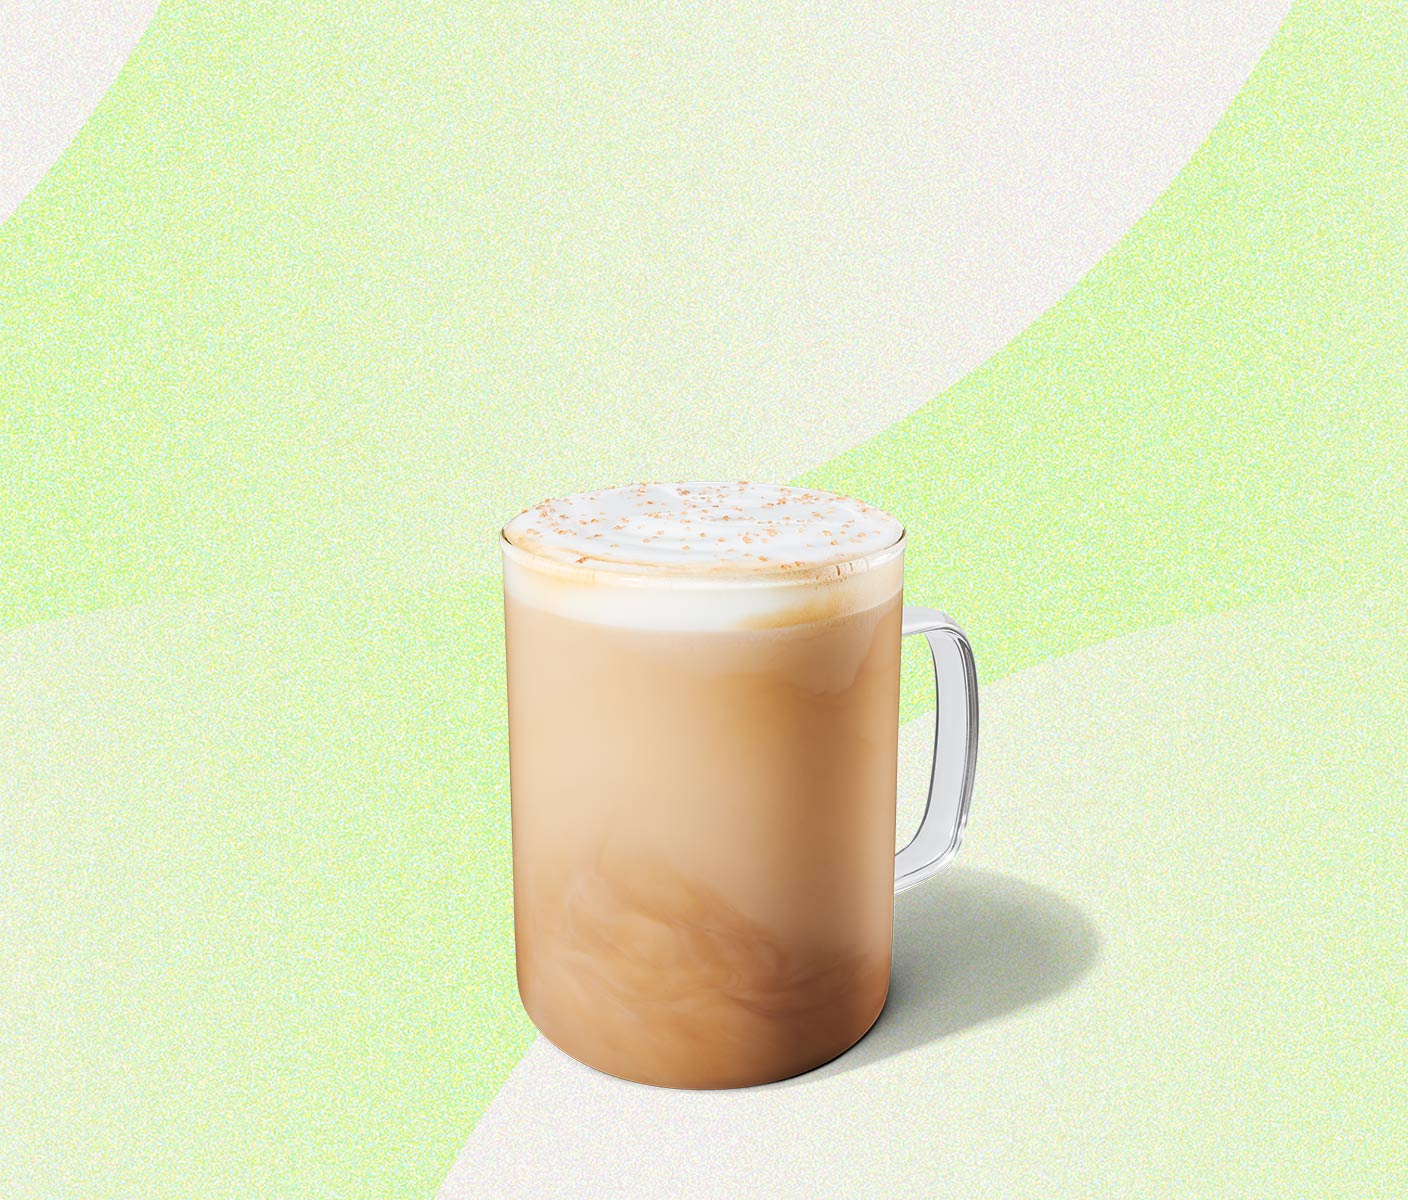 Creamy latte in a glass mug.